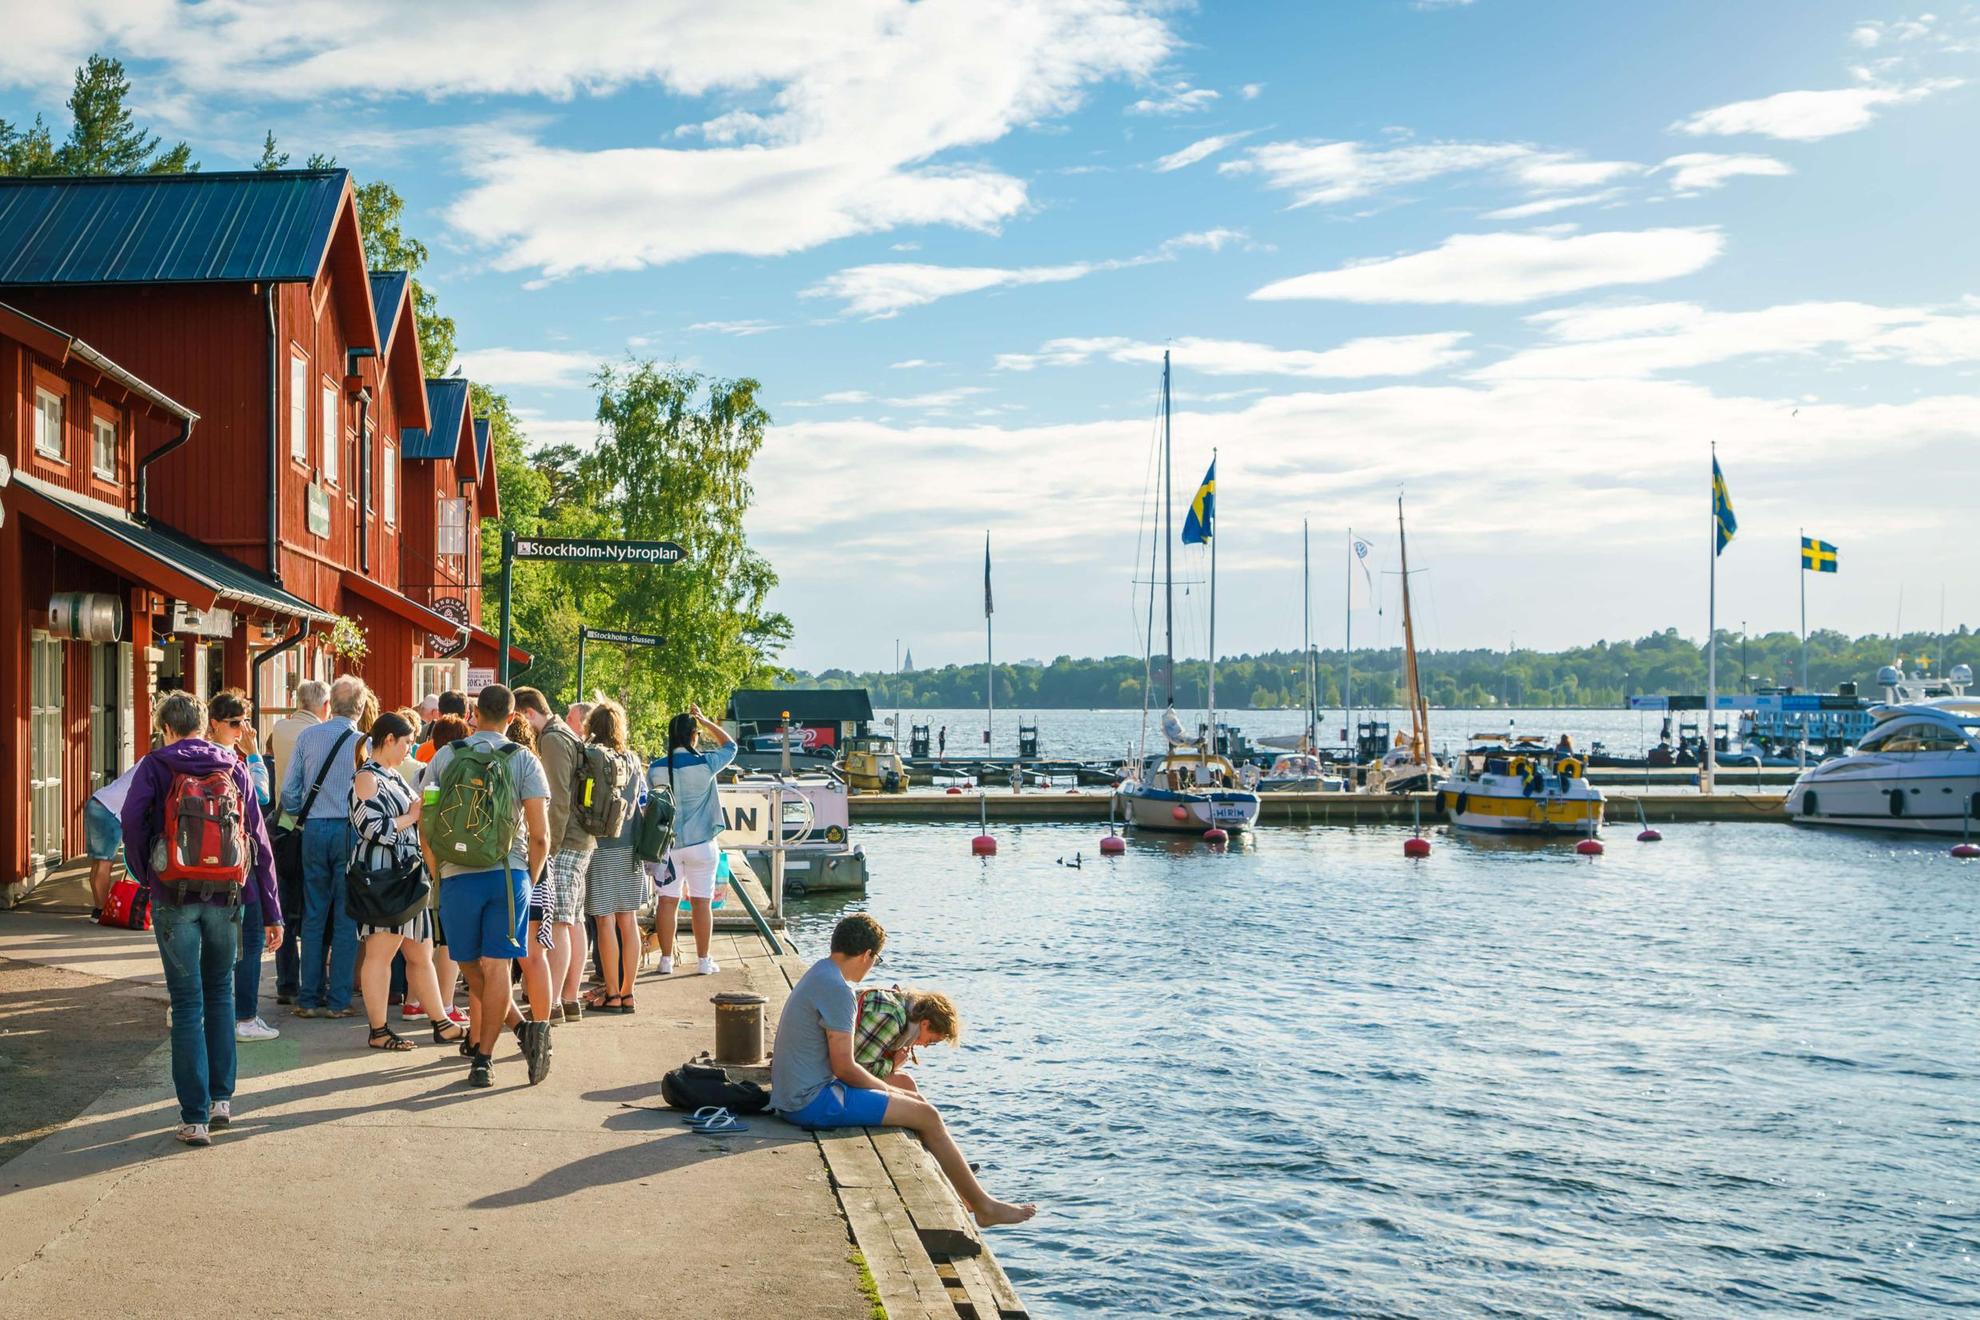 Menschen sitzen an einem Hafen in Schweden. Das Sonnenlicht fällt auf das Wasser. Es stehen Boote im Hafen und am Ufer stehen rote Häuser.